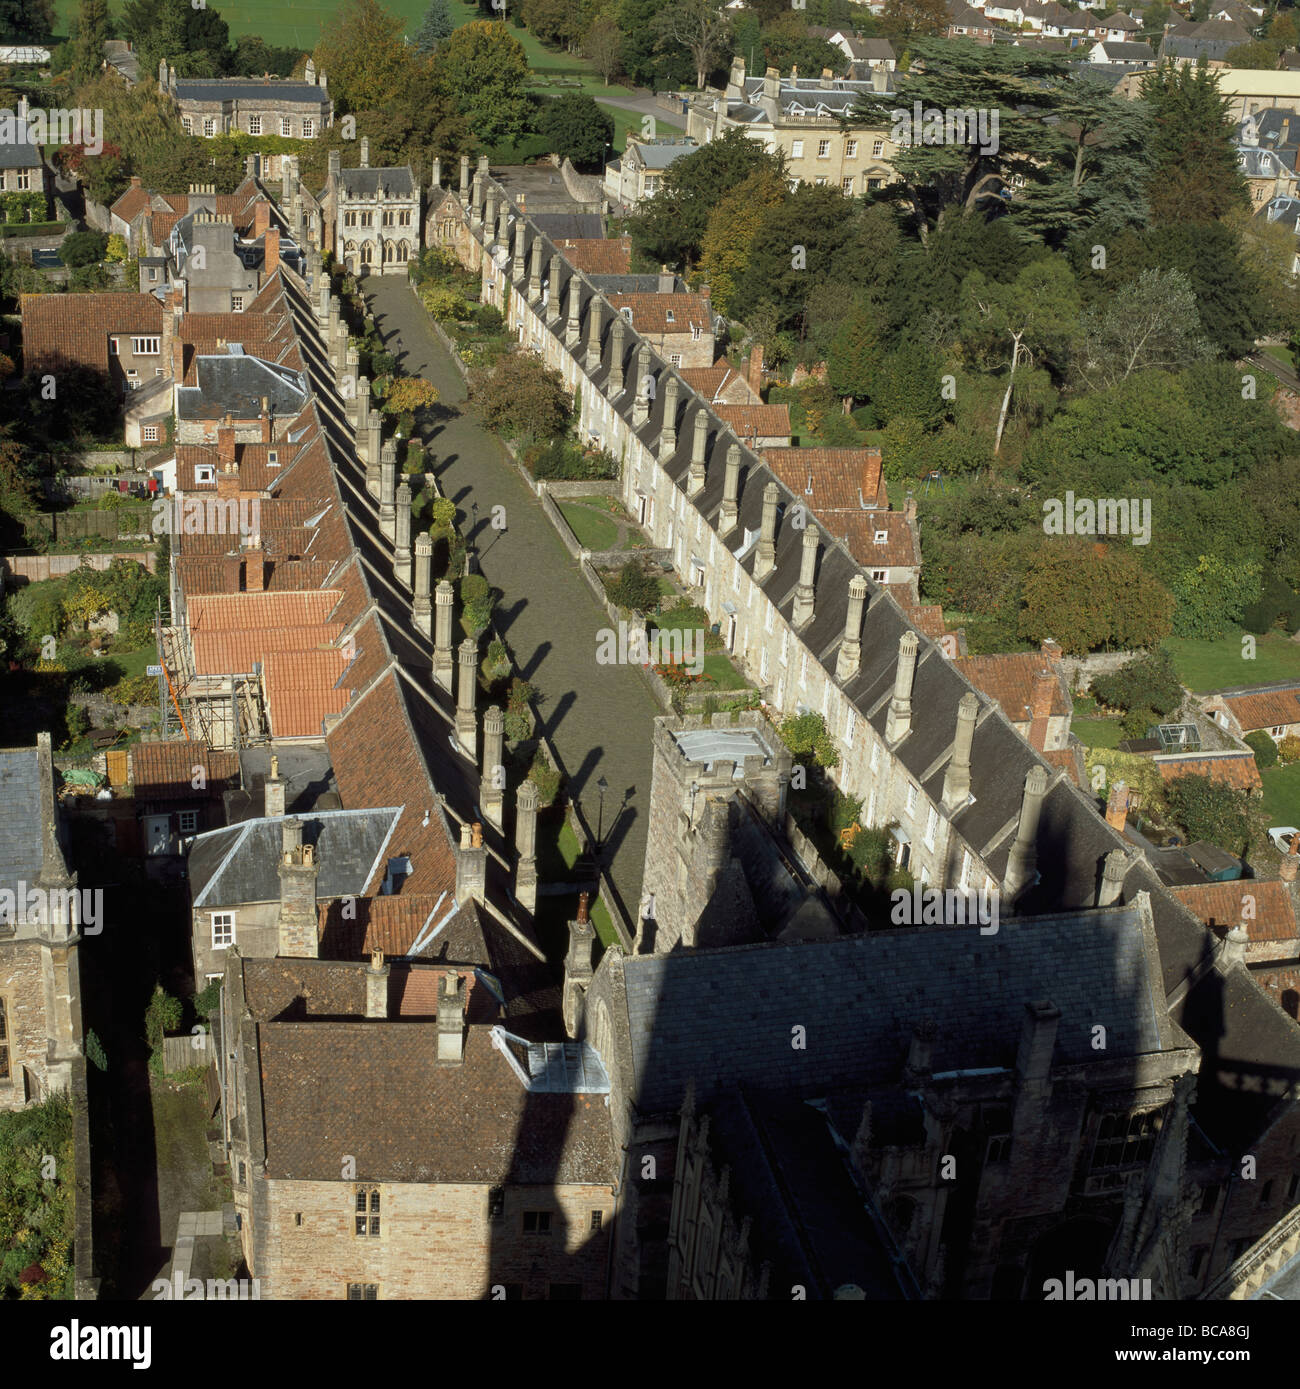 Pozzetti Vicari' vicino avenue del tardo medioevo case per il clero della Cattedrale vista dalla torre. Foto Stock